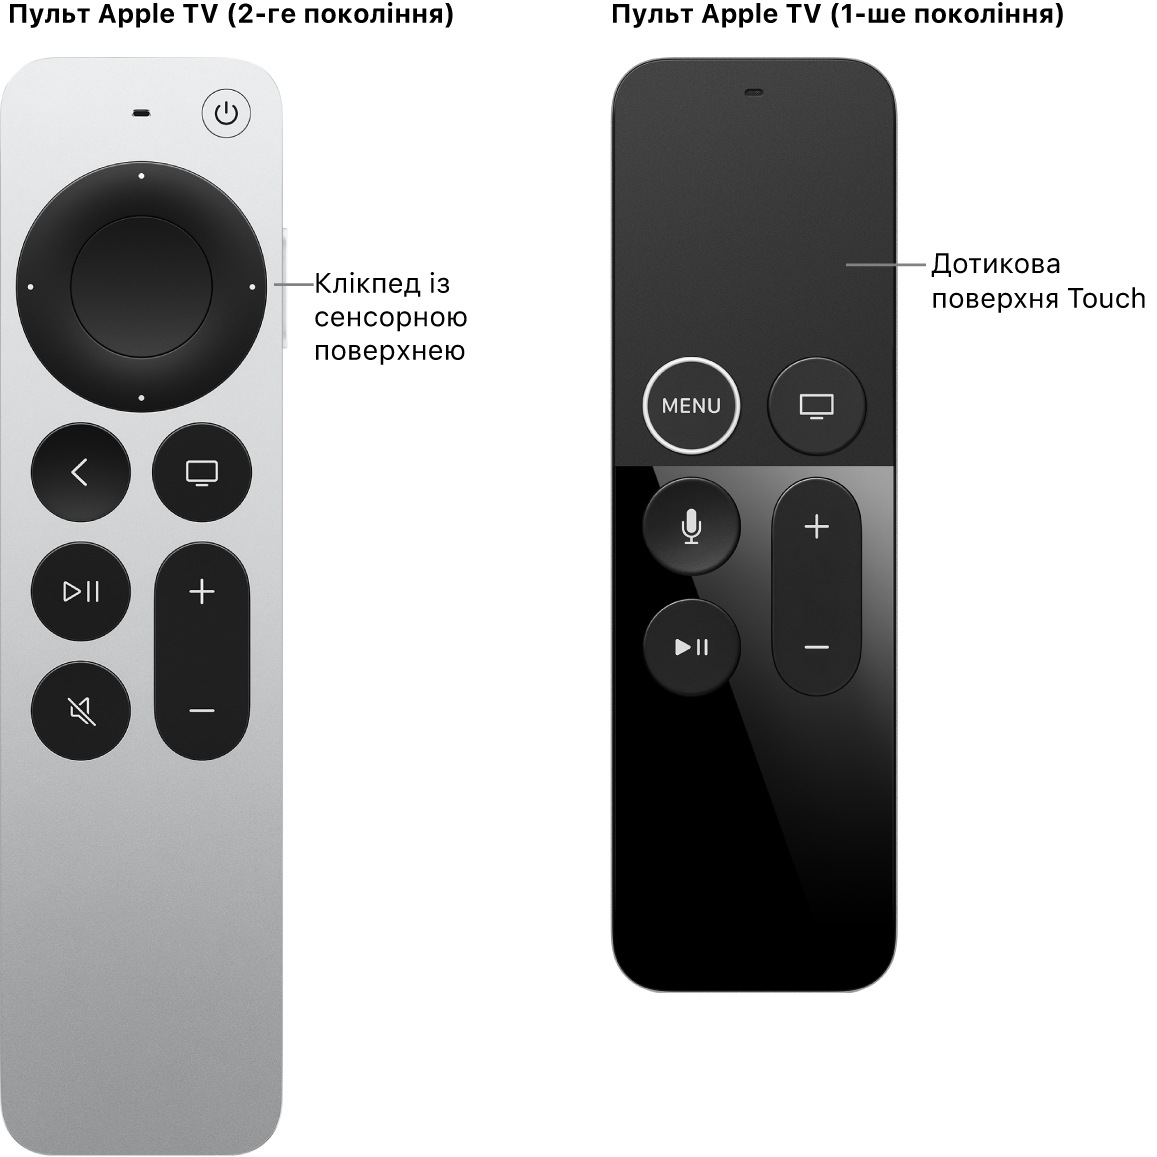 Пульт Apple TV (2-го й 3-го покоління) з клікпедом і пульт Apple TV (1-го покоління) із сенсорною поверхнею